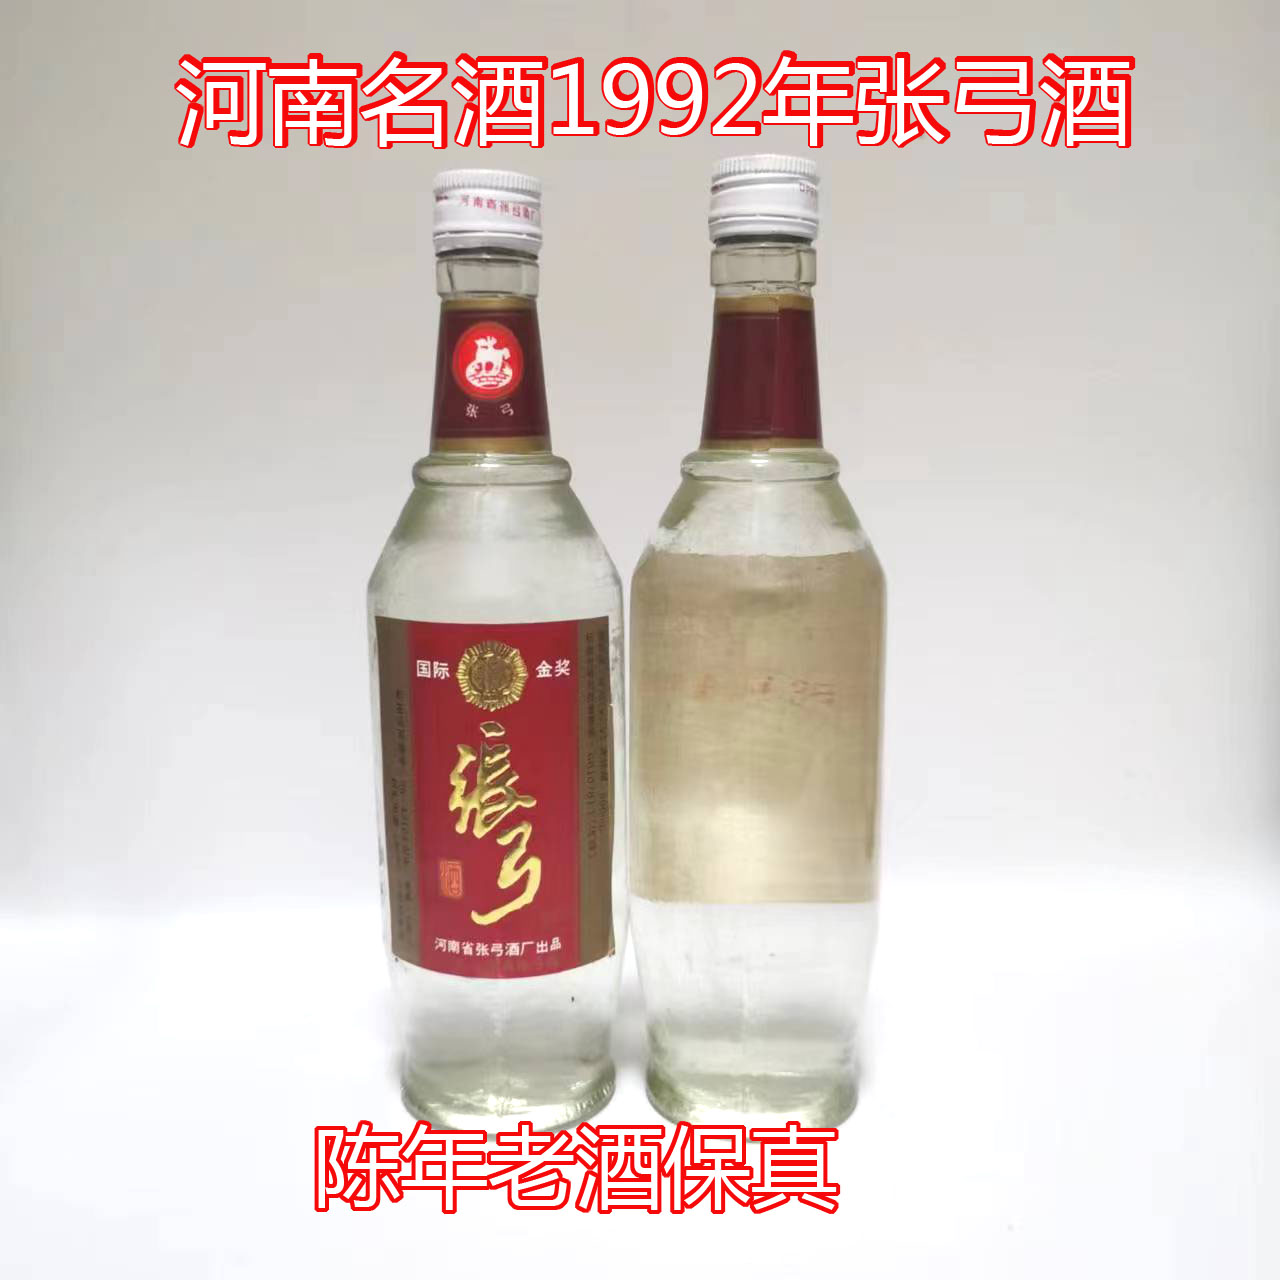 河南名酒52优质酒52度张弓酒1992年陈年老酒收藏纯粮食白酒性价比